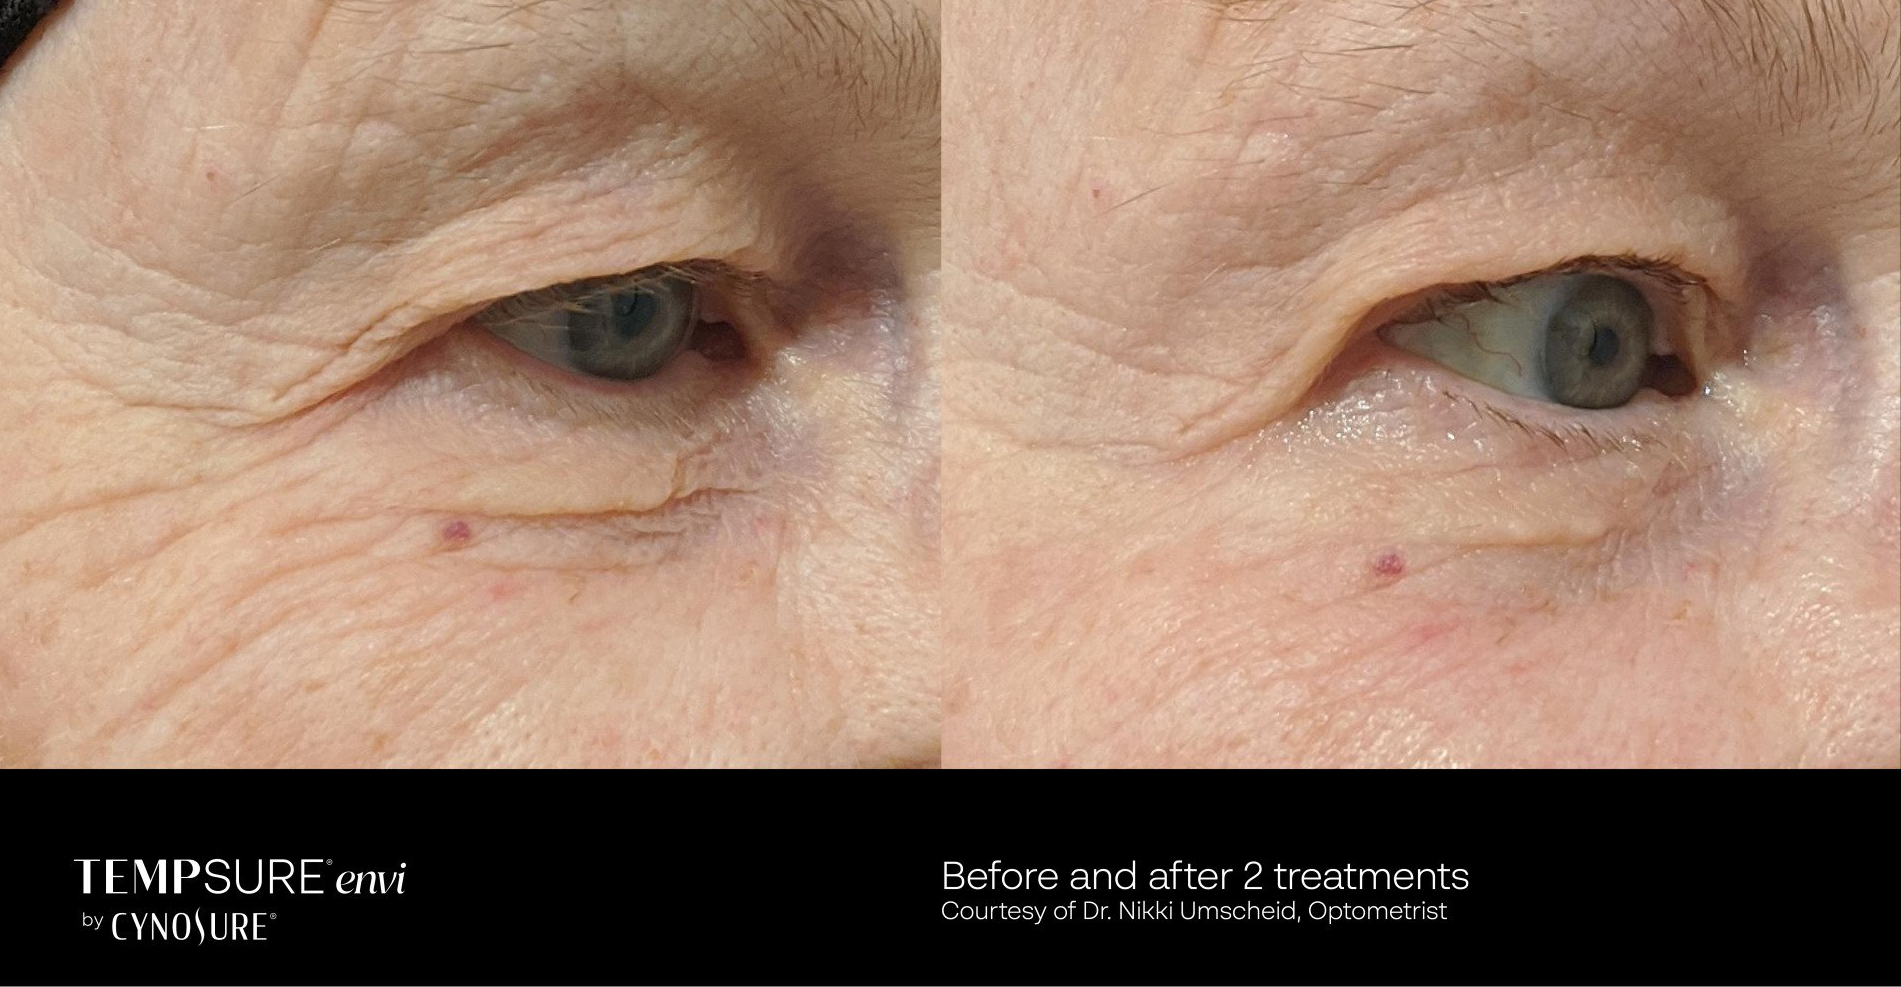 before and after tempsure envi treatment - patient photo